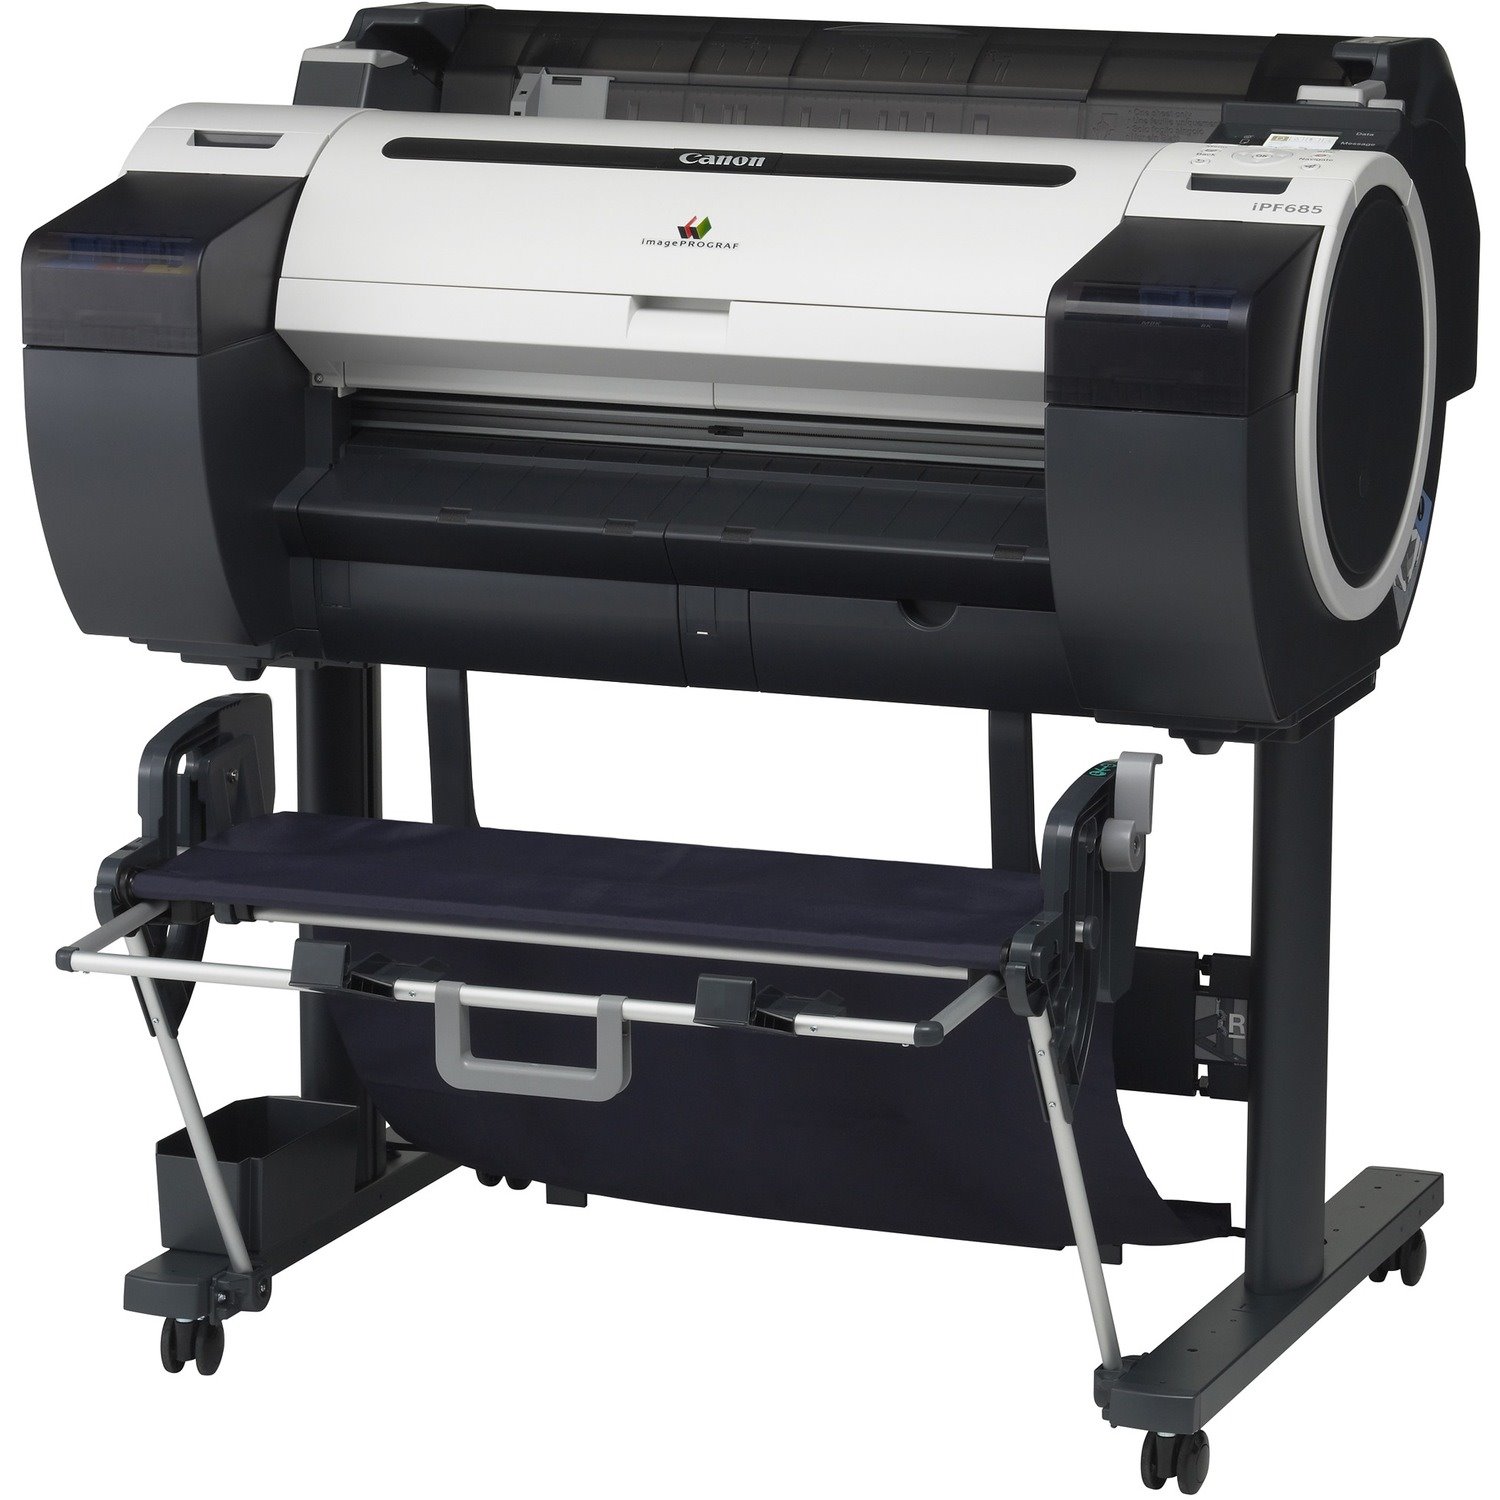 Canon imagePROGRAF iPF685 Inkjet Large Format Printer - 24.02" Print Width - Color